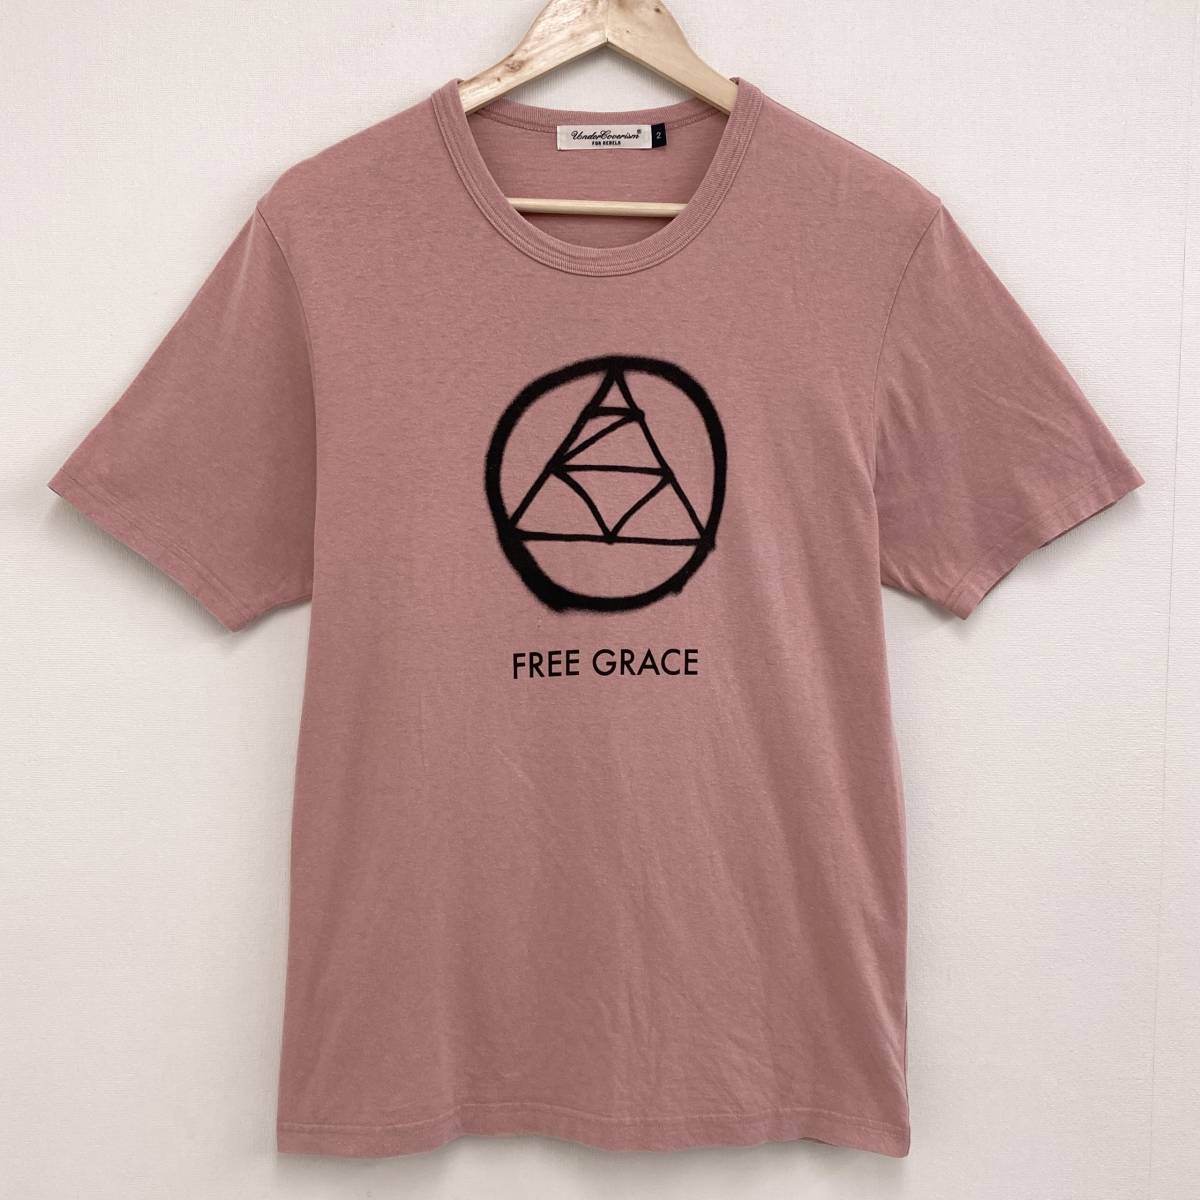 UNDERCOVER ZAM футболка розовый 2 размер undercover Circle Logo трикотаж с коротким рукавом Tee archive 3080318